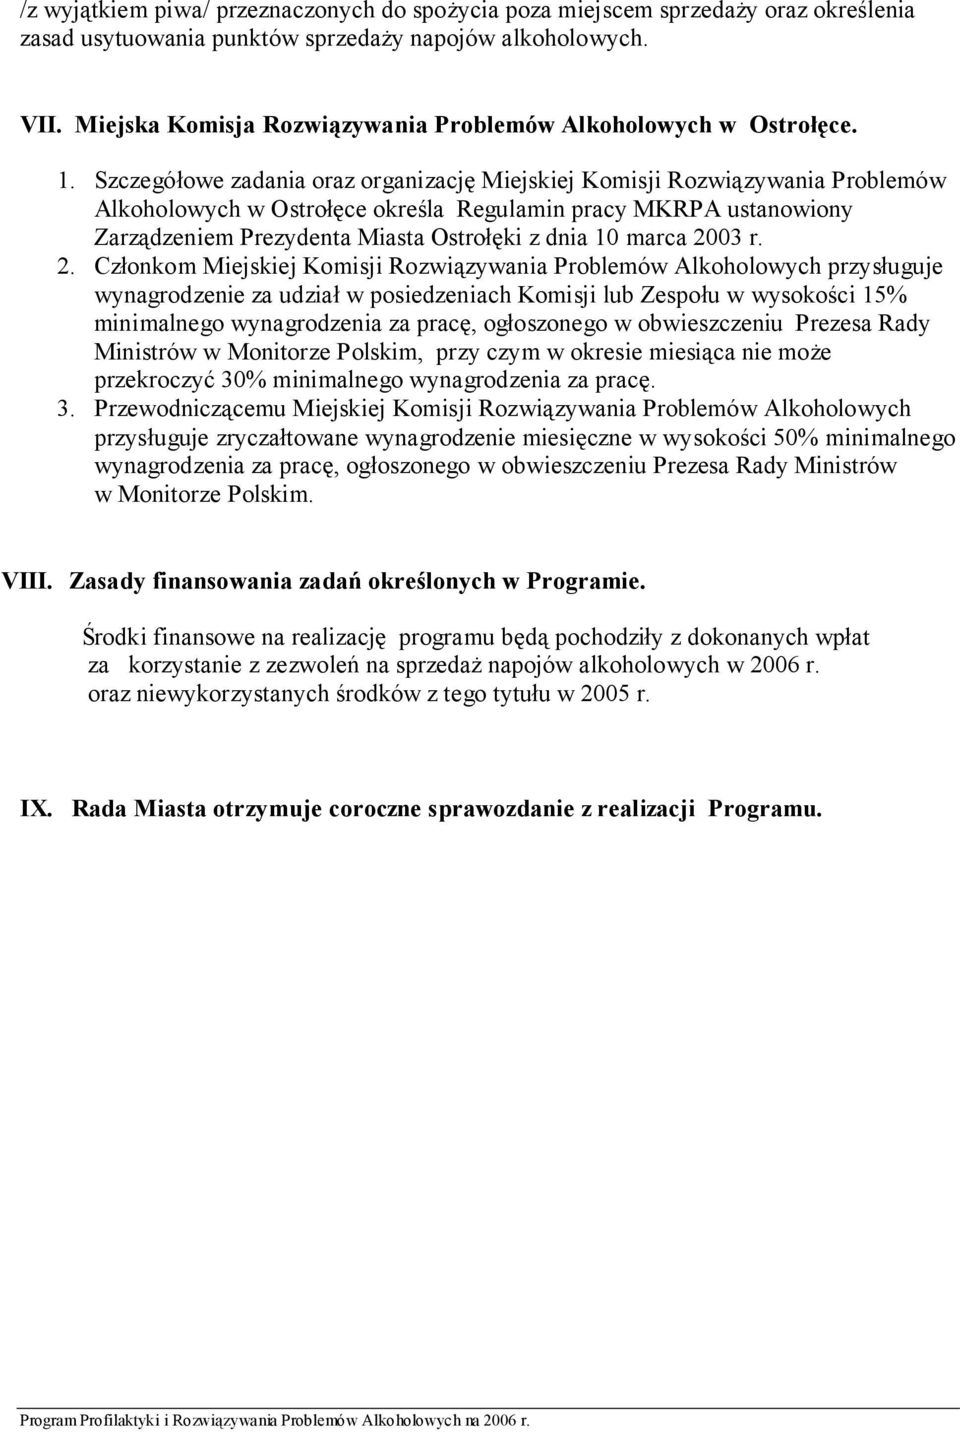 Szczegółowe zadania oraz organizację Miejskiej Komisji Rozwiązywania Problemów Alkoholowych w Ostrołęce określa Regulamin pracy MKRPA ustanowiony Zarządzeniem Prezydenta Miasta Ostrołęki z dnia 10